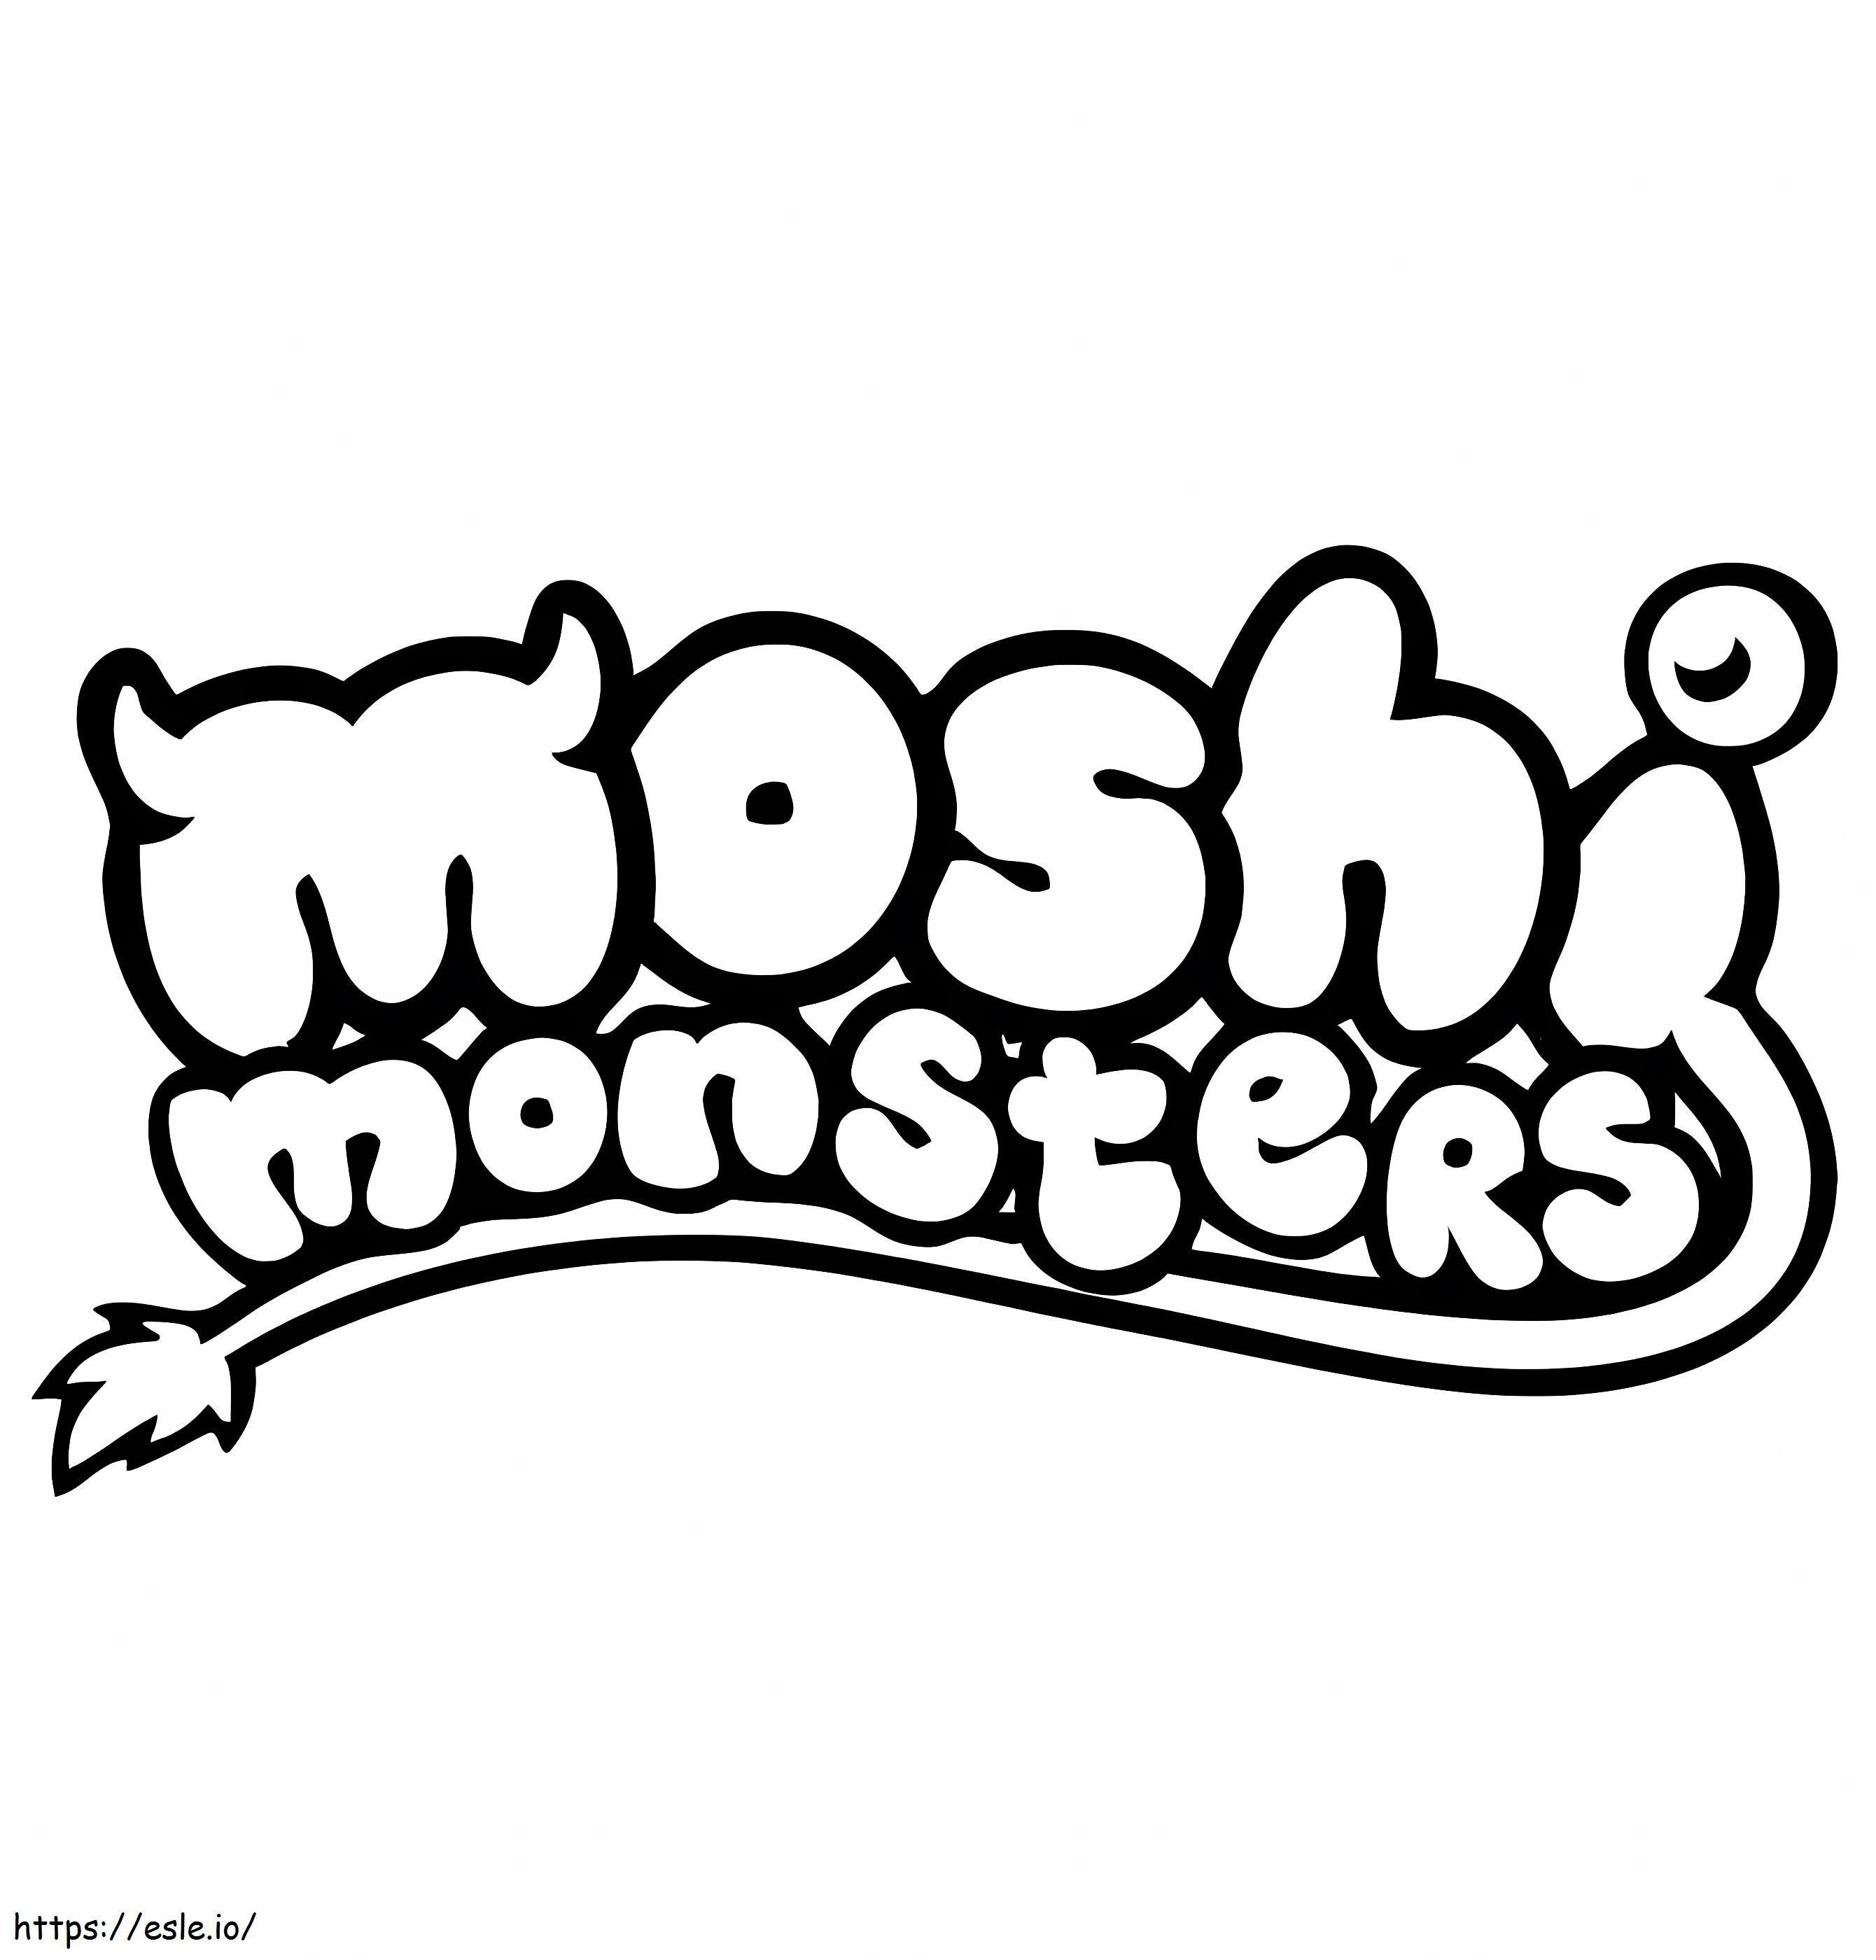 Logotipo Moshi Monstruos para colorear